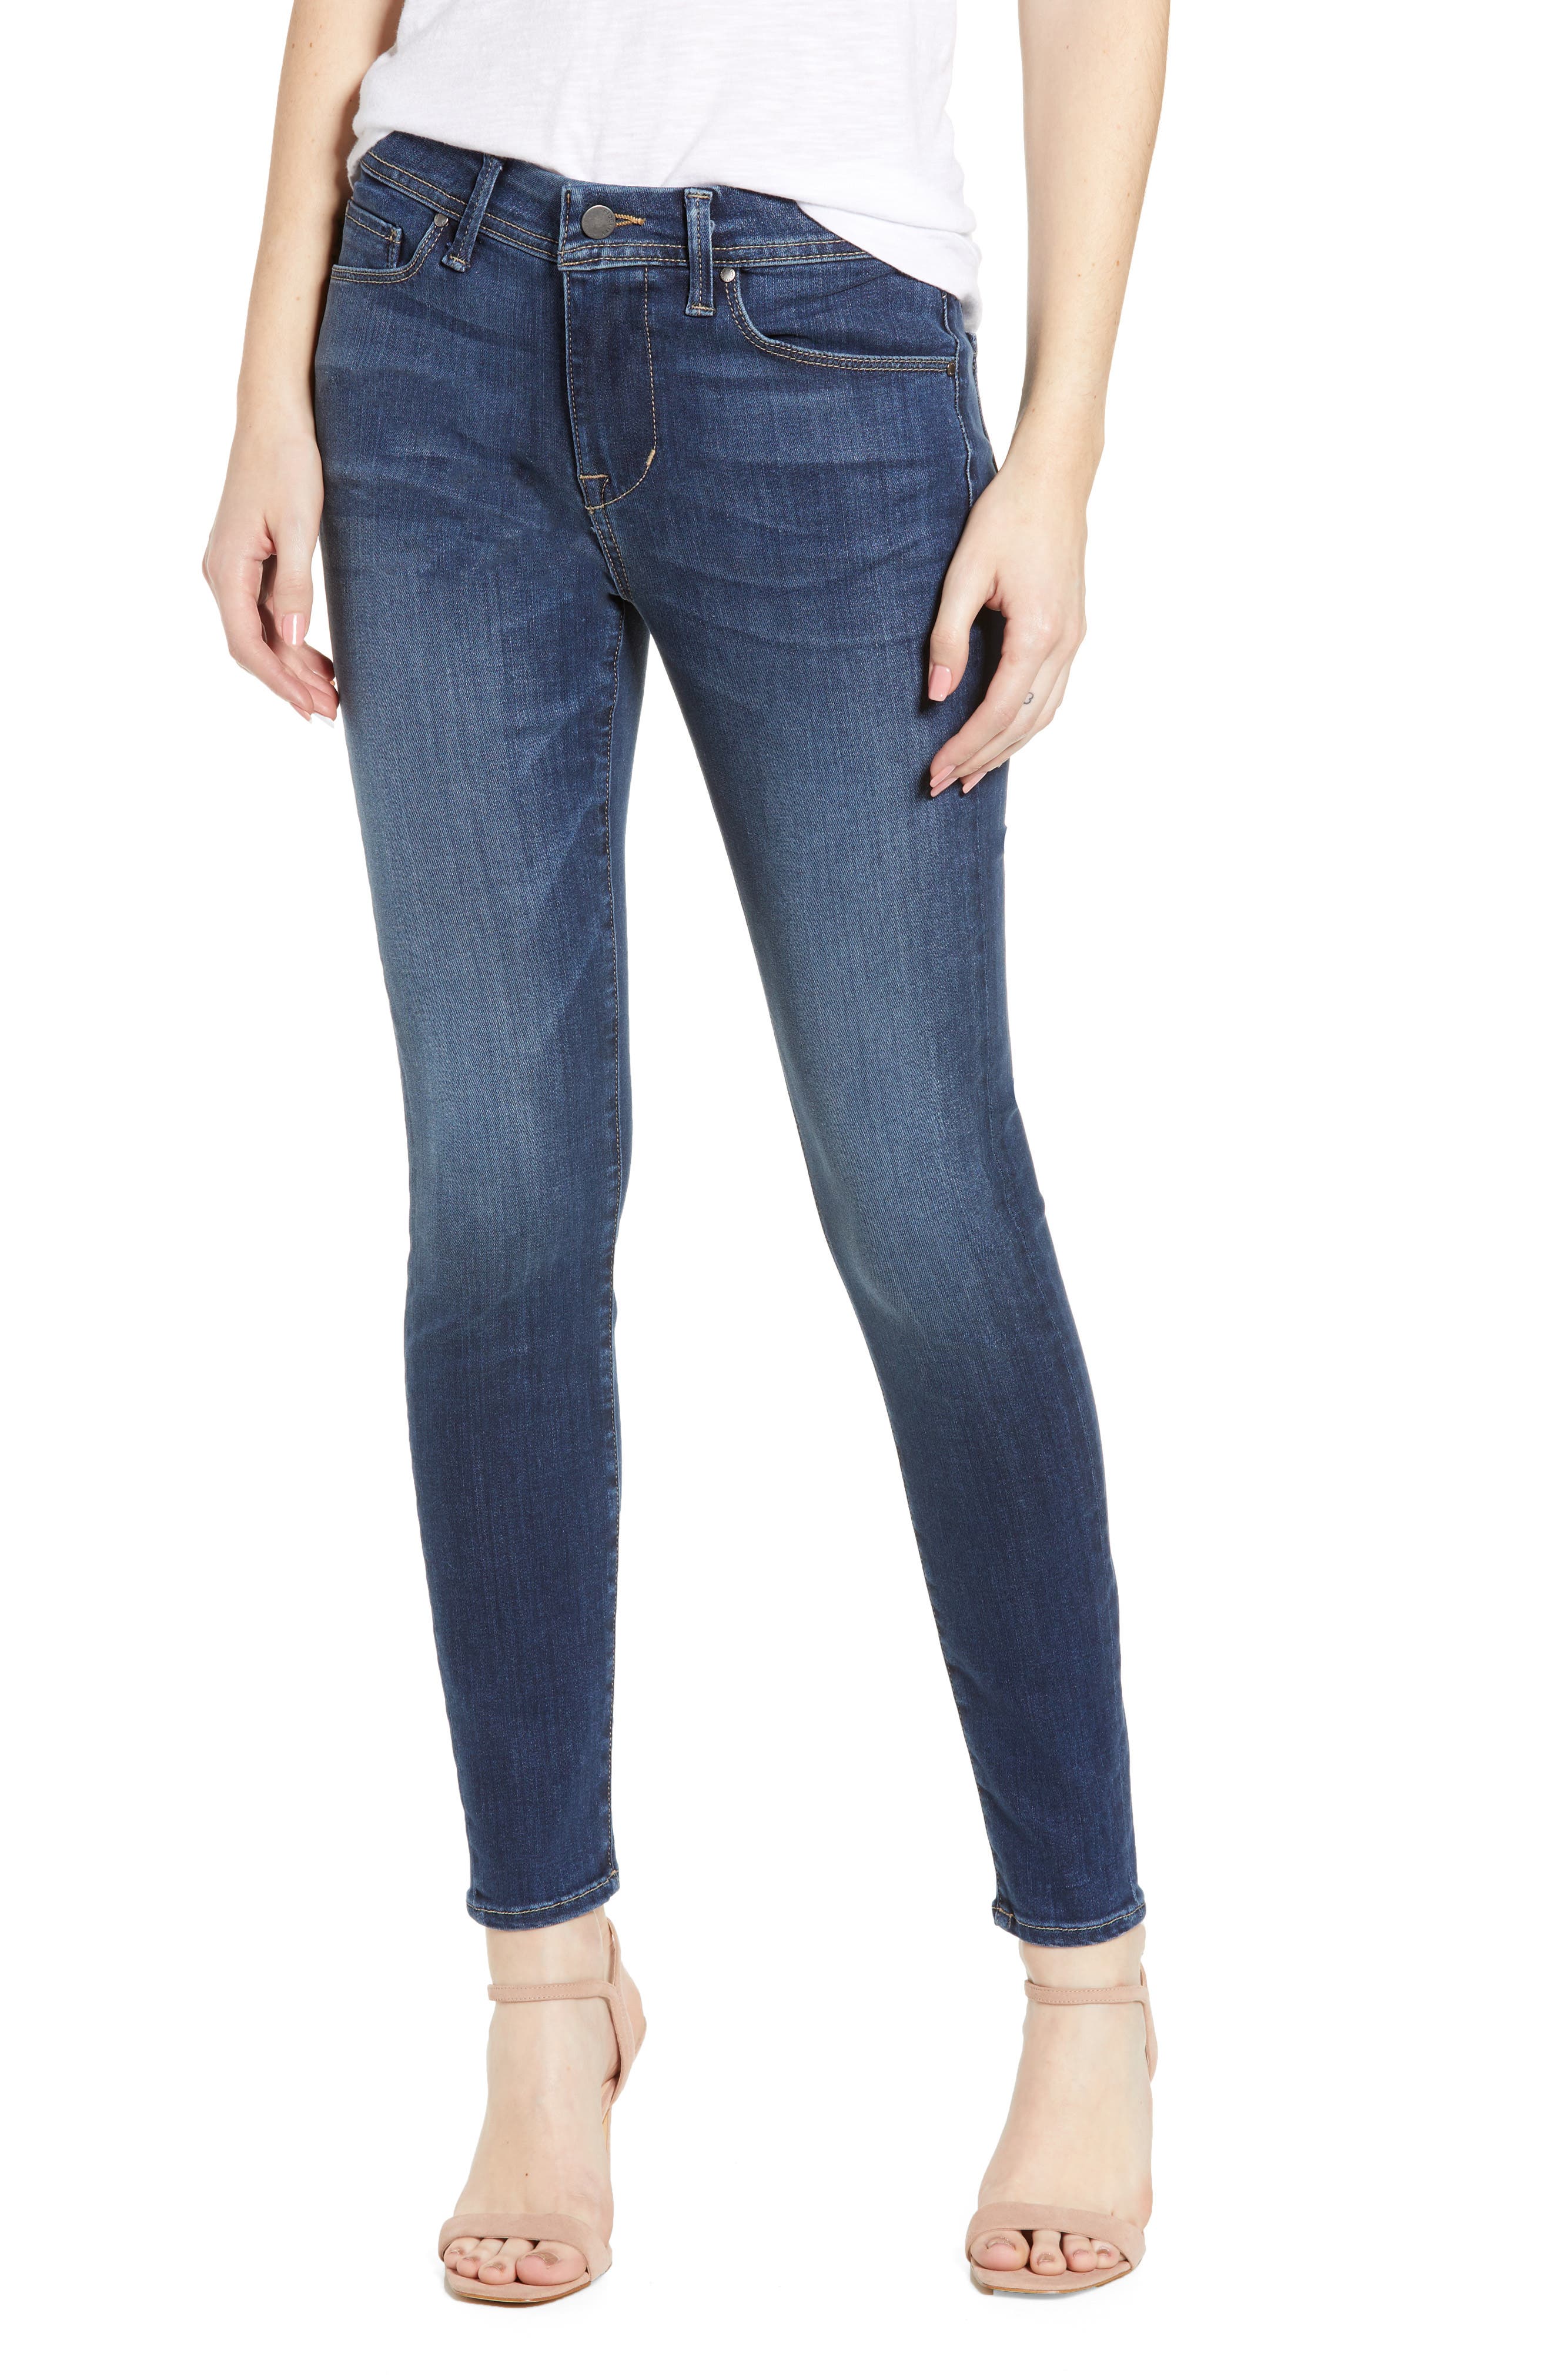 fidelity jeans womens sale